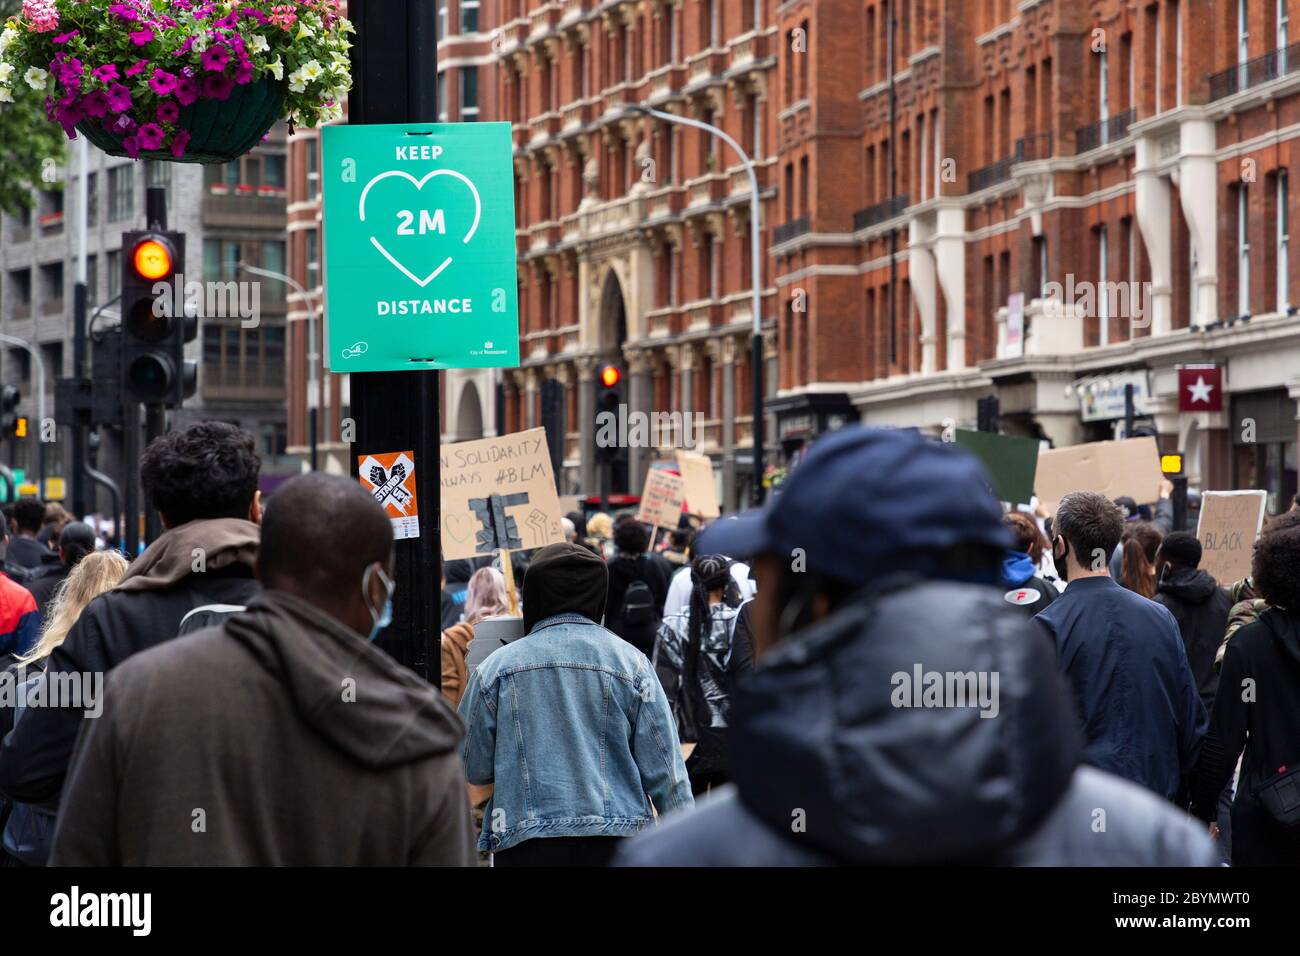 Eine Menge Demonstranten marschiert während eines Black Lives Matters Protests an einem sozial distanzierenden Zeichen vorbei, London, 7. Juni 2020 Stockfoto